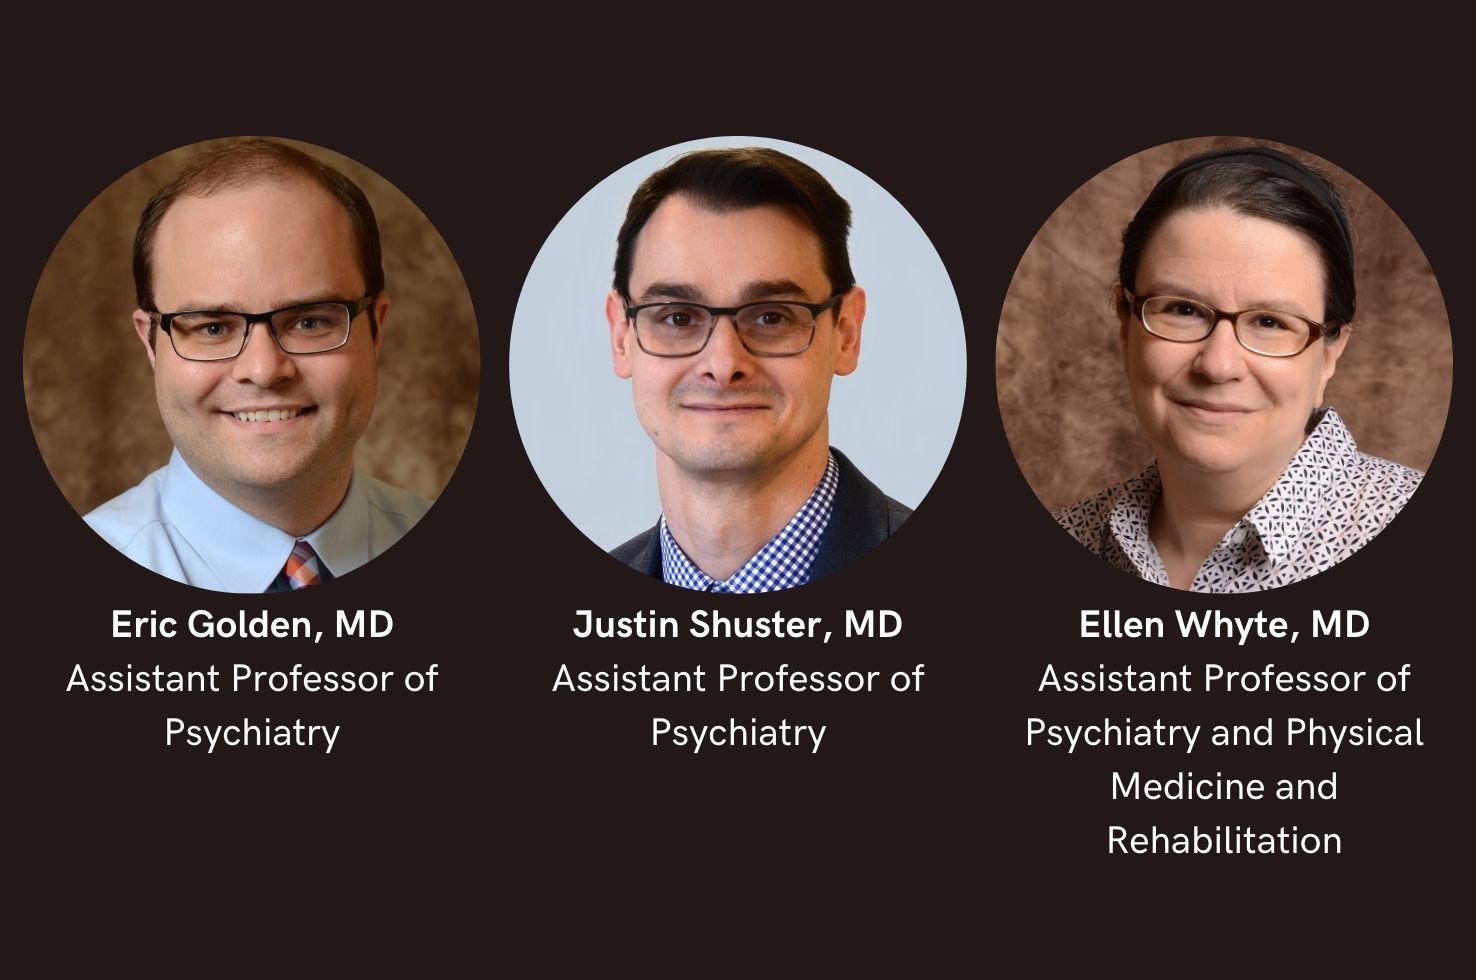 Drs. Eric Golden, Justin Shuster and Ellen Whyte